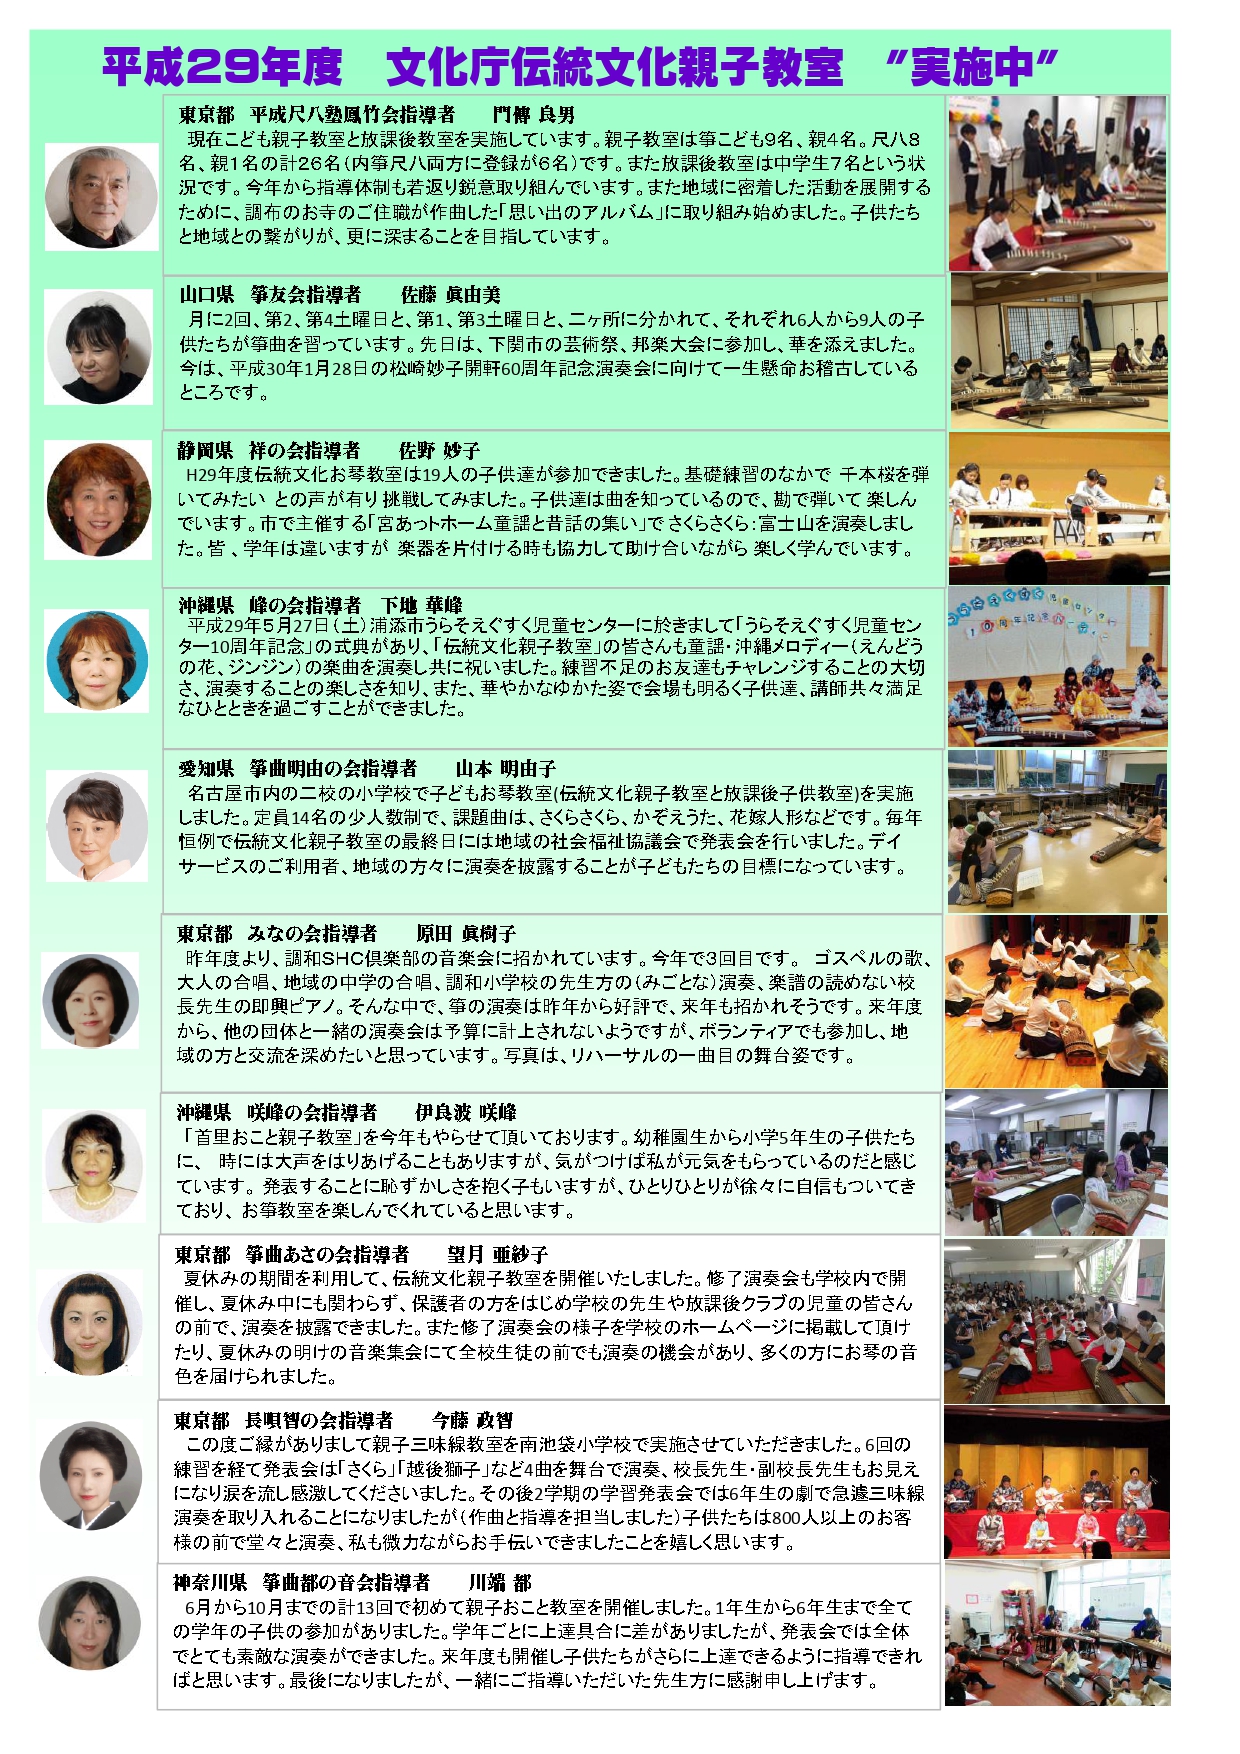 平成29年度・文化庁「伝統文化親子教室」事業